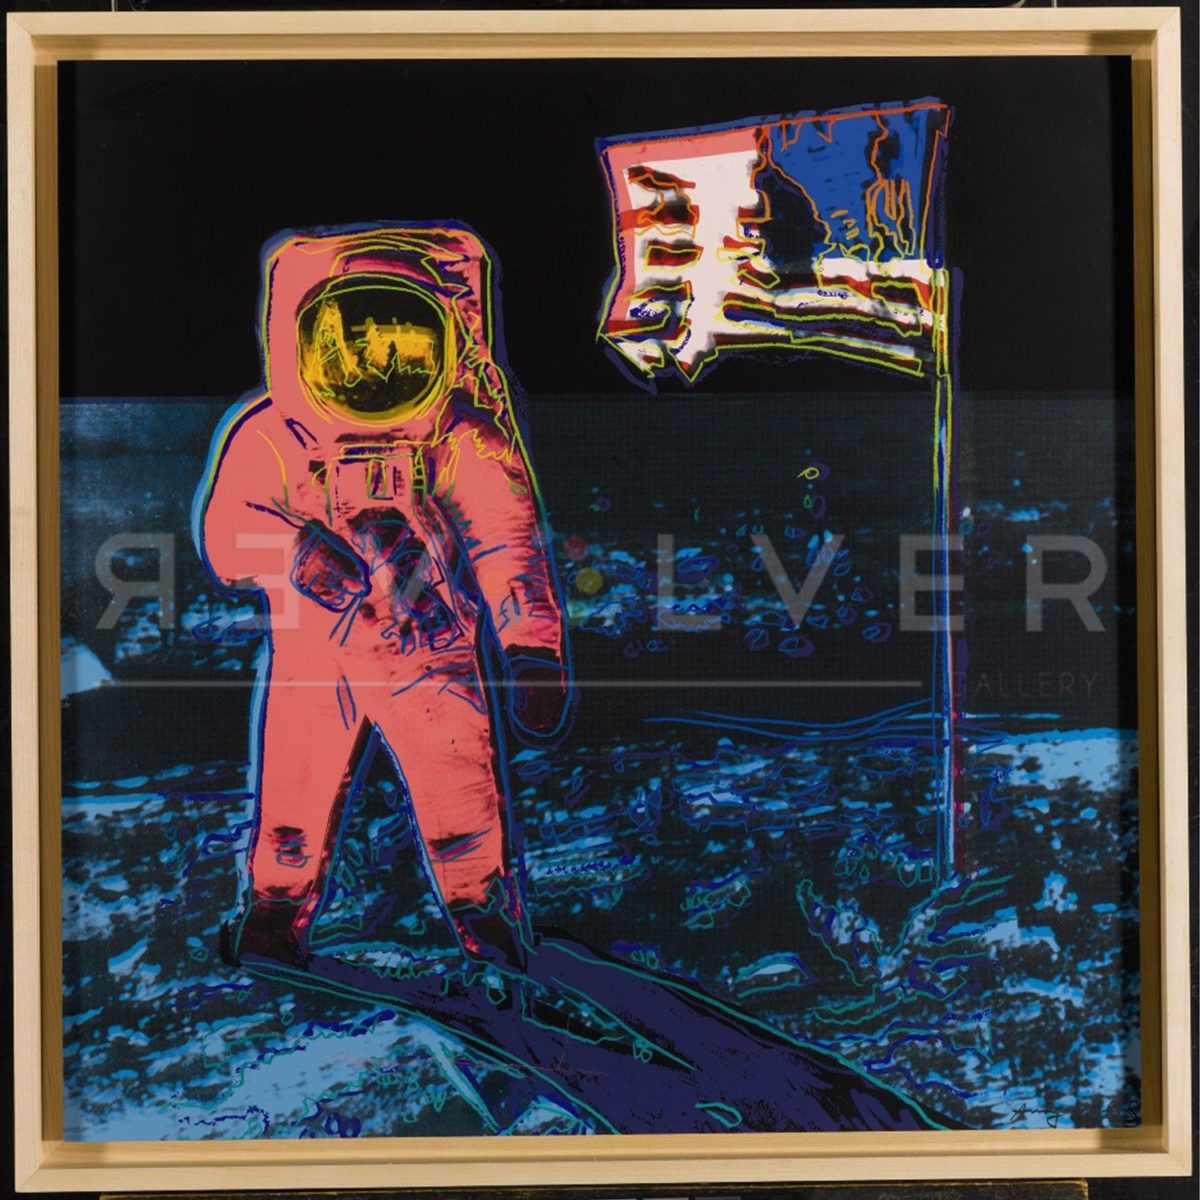 Andy Warhol Moonwalk 405 screenprint in frame, with Revolver Gallery watermark.